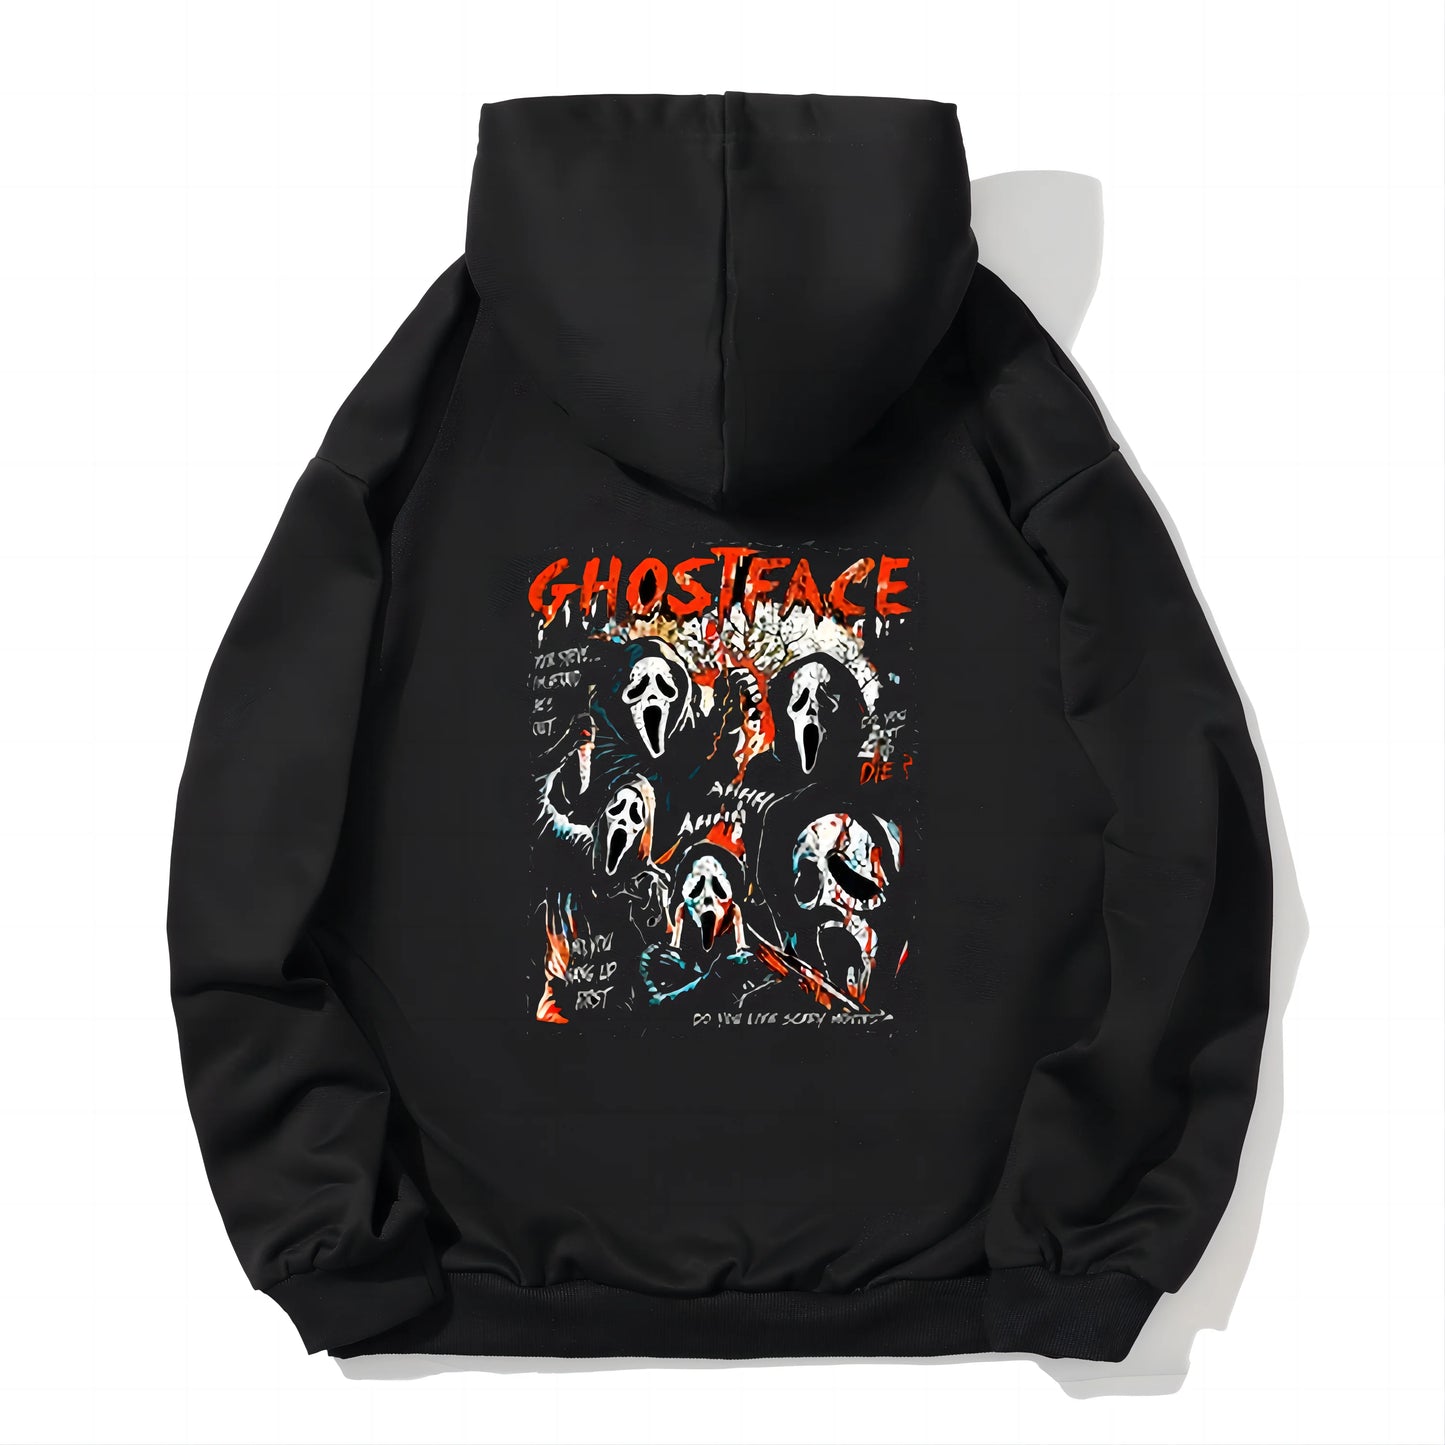 Dream VI Ghostface Hoodie Women's Horro Sweatshirt Felpa Moletom Cartoon Print Long Sleeve Winter Sportswear Street Wear